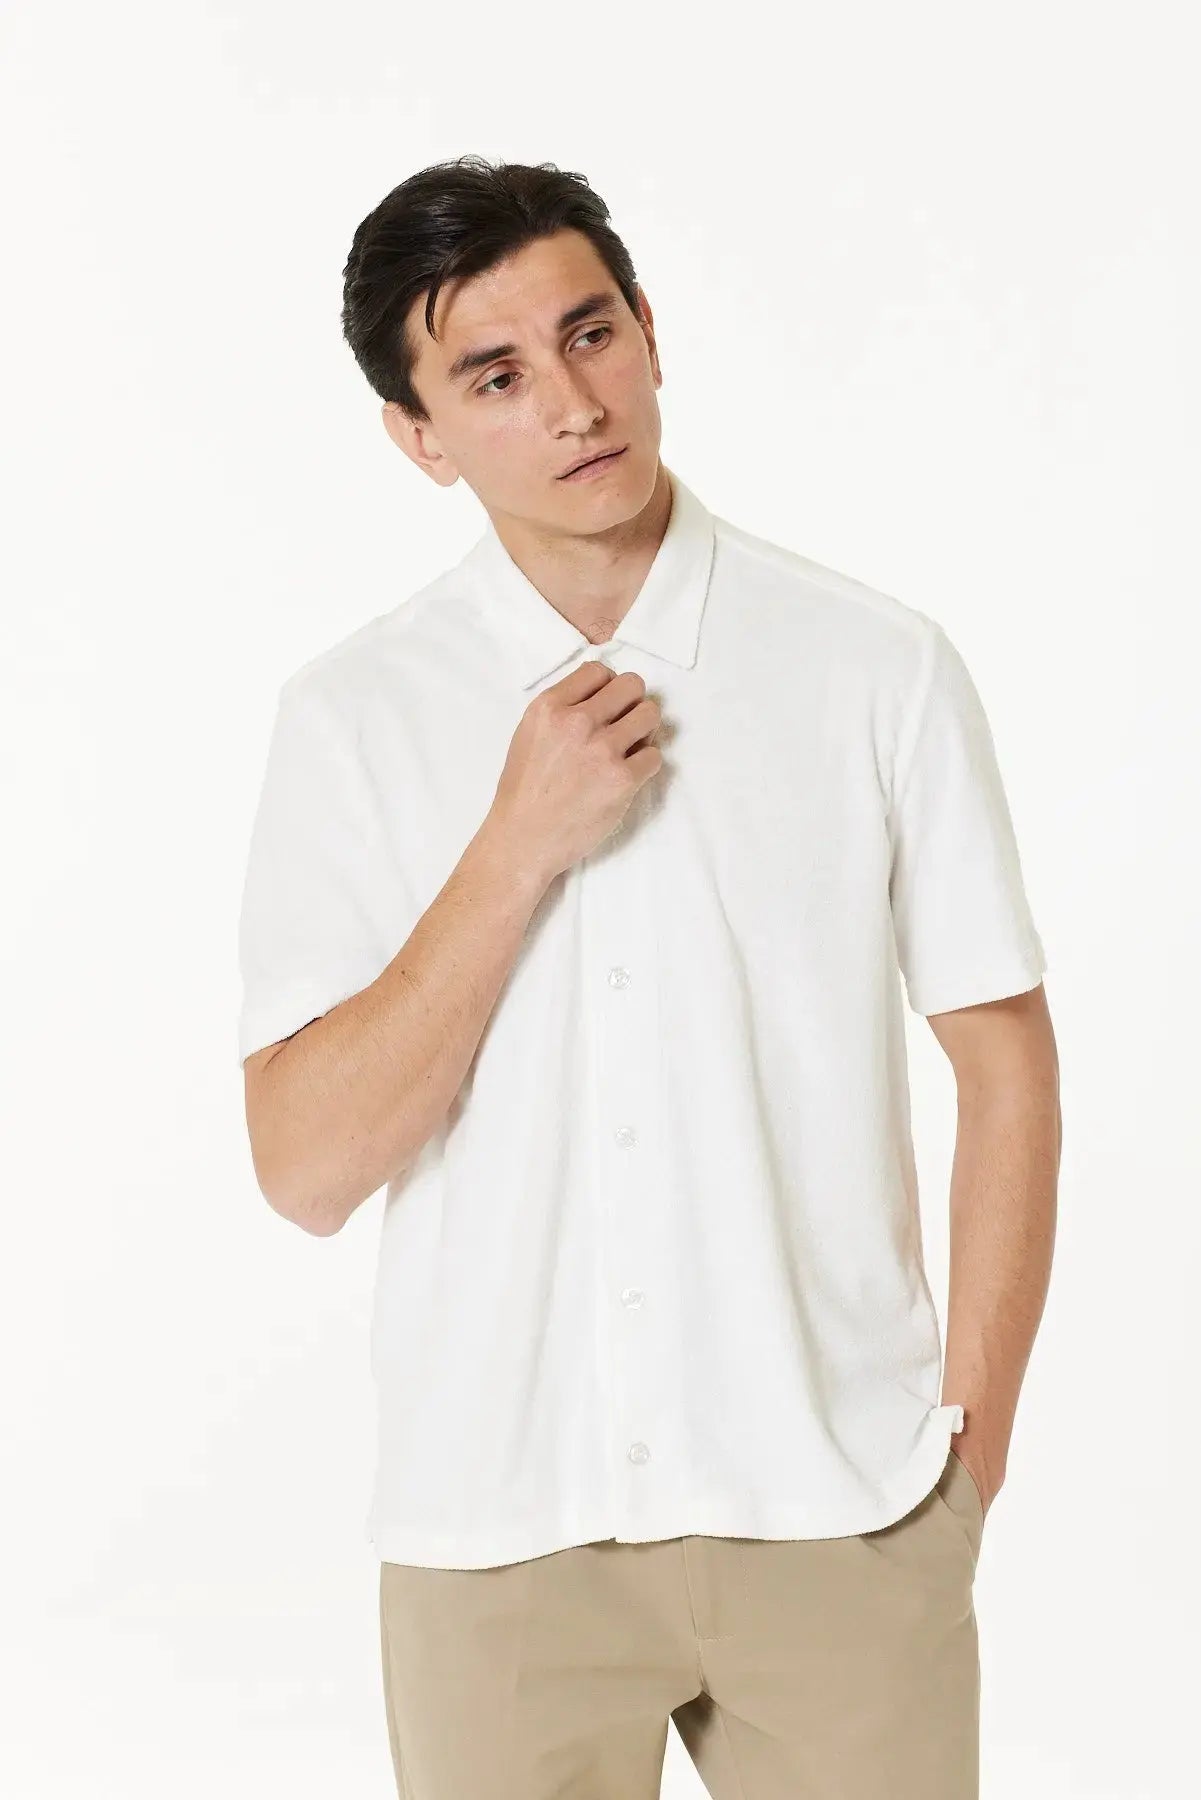 Dukes Short Sleeve Shirt - Ecru Player - Wear London